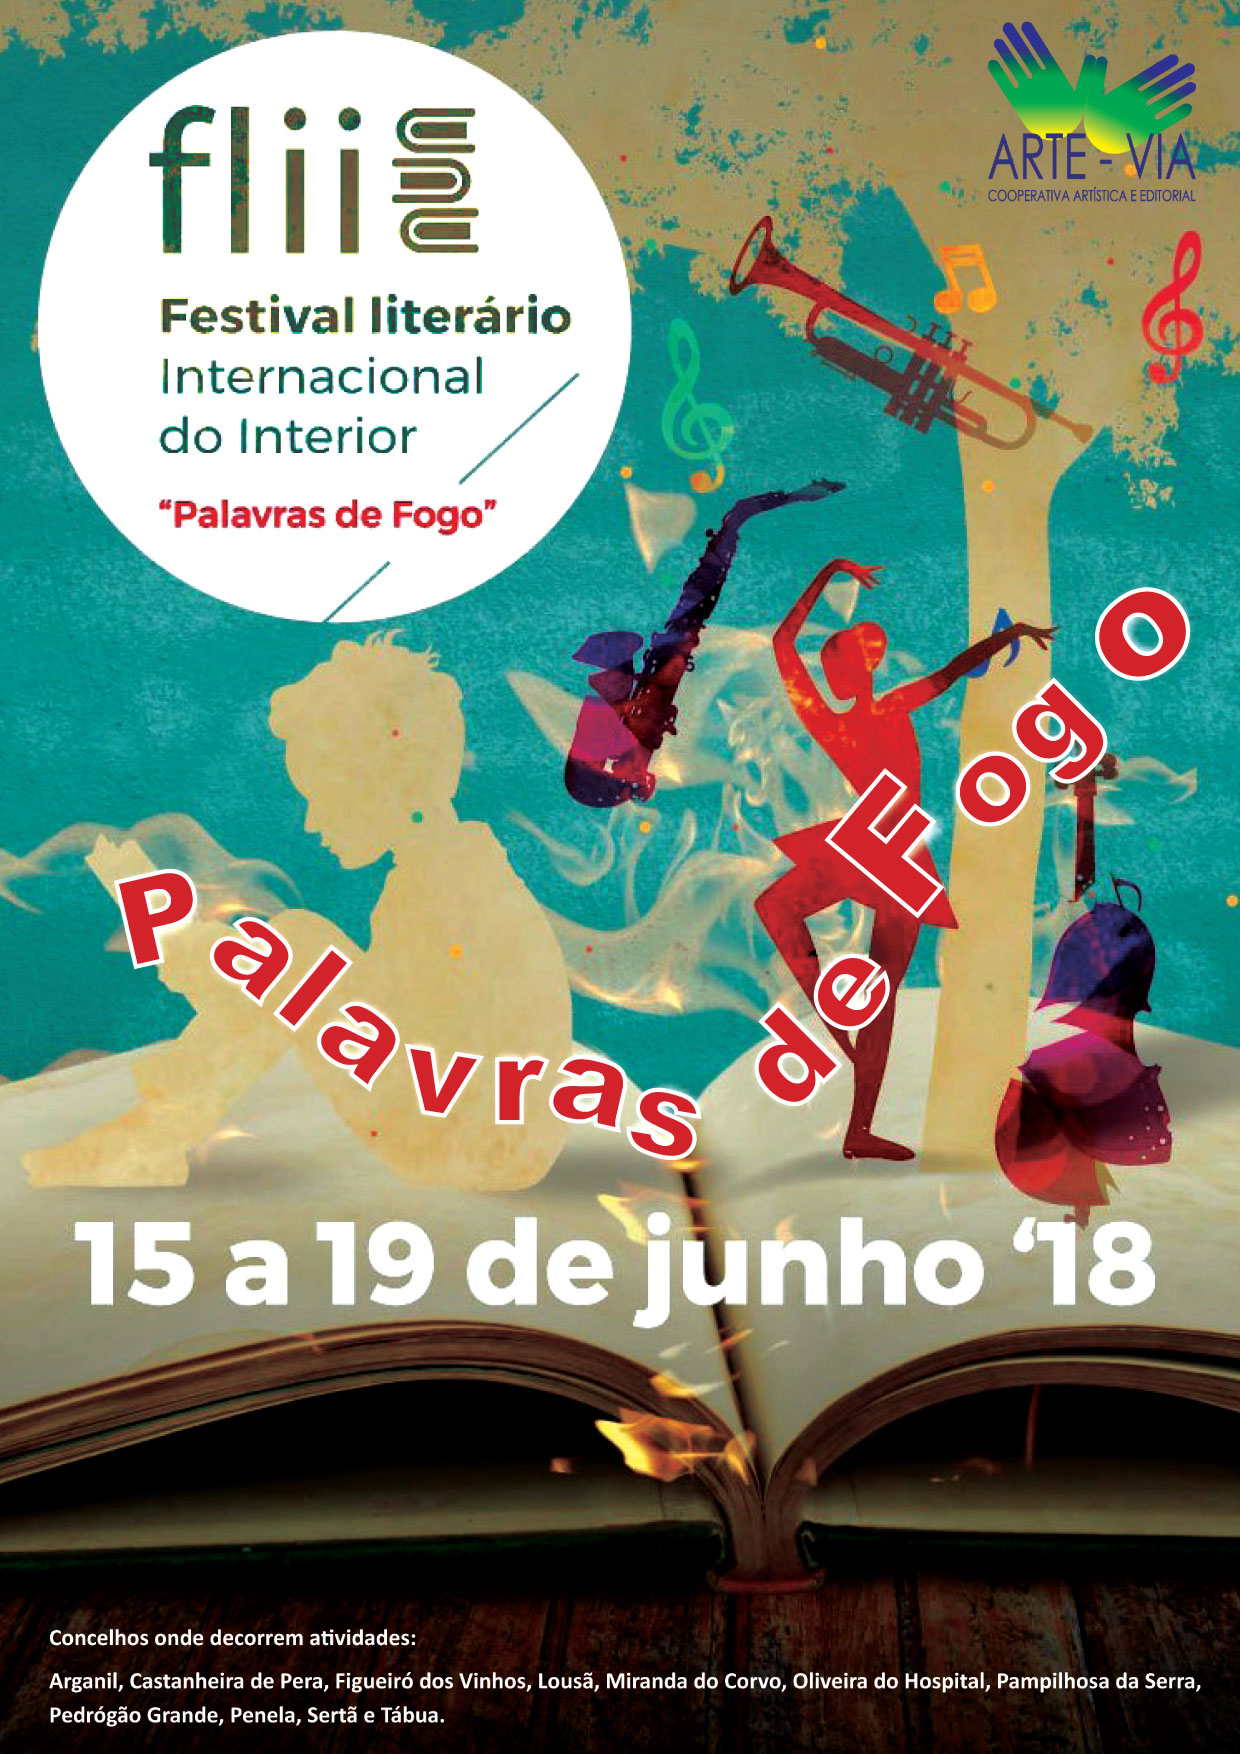 Festival Literário Internacional do Interior "Palavras de Fogo"